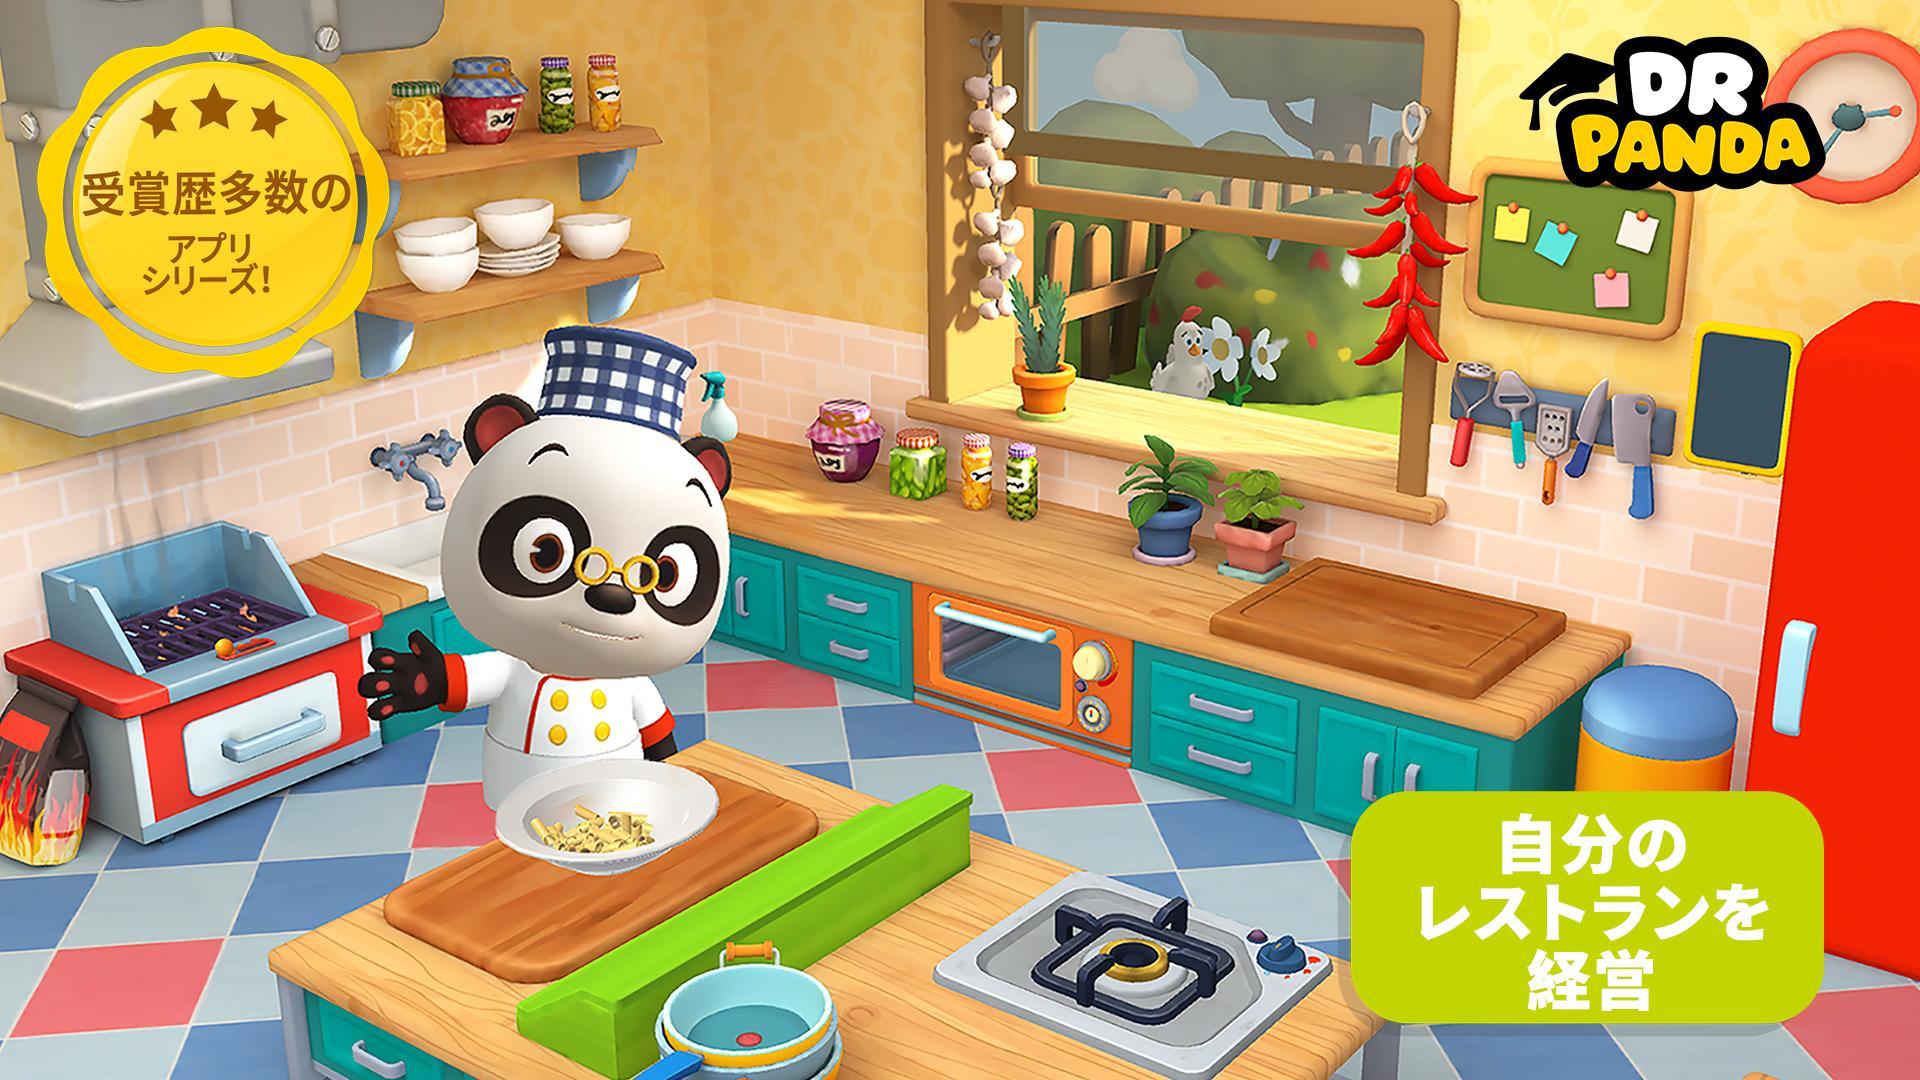 Screenshot 1 of Dr. Panda レストラン 3 21.2.75